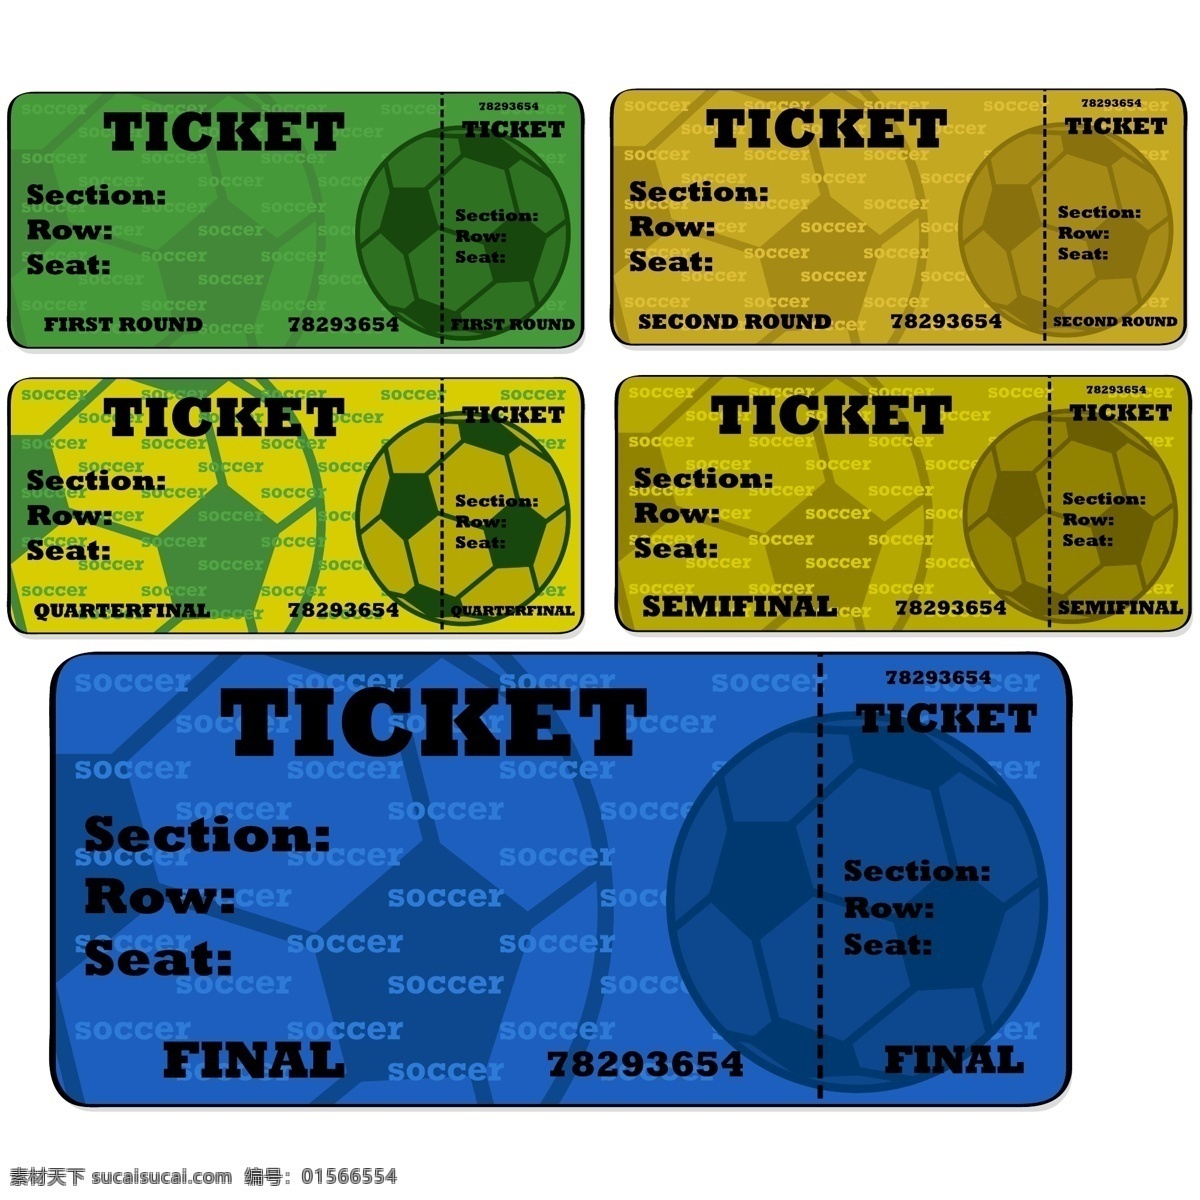 复古 足球 入场券 矢量 模板下载 欧式风格 票 生活百科 矢量素材 白色